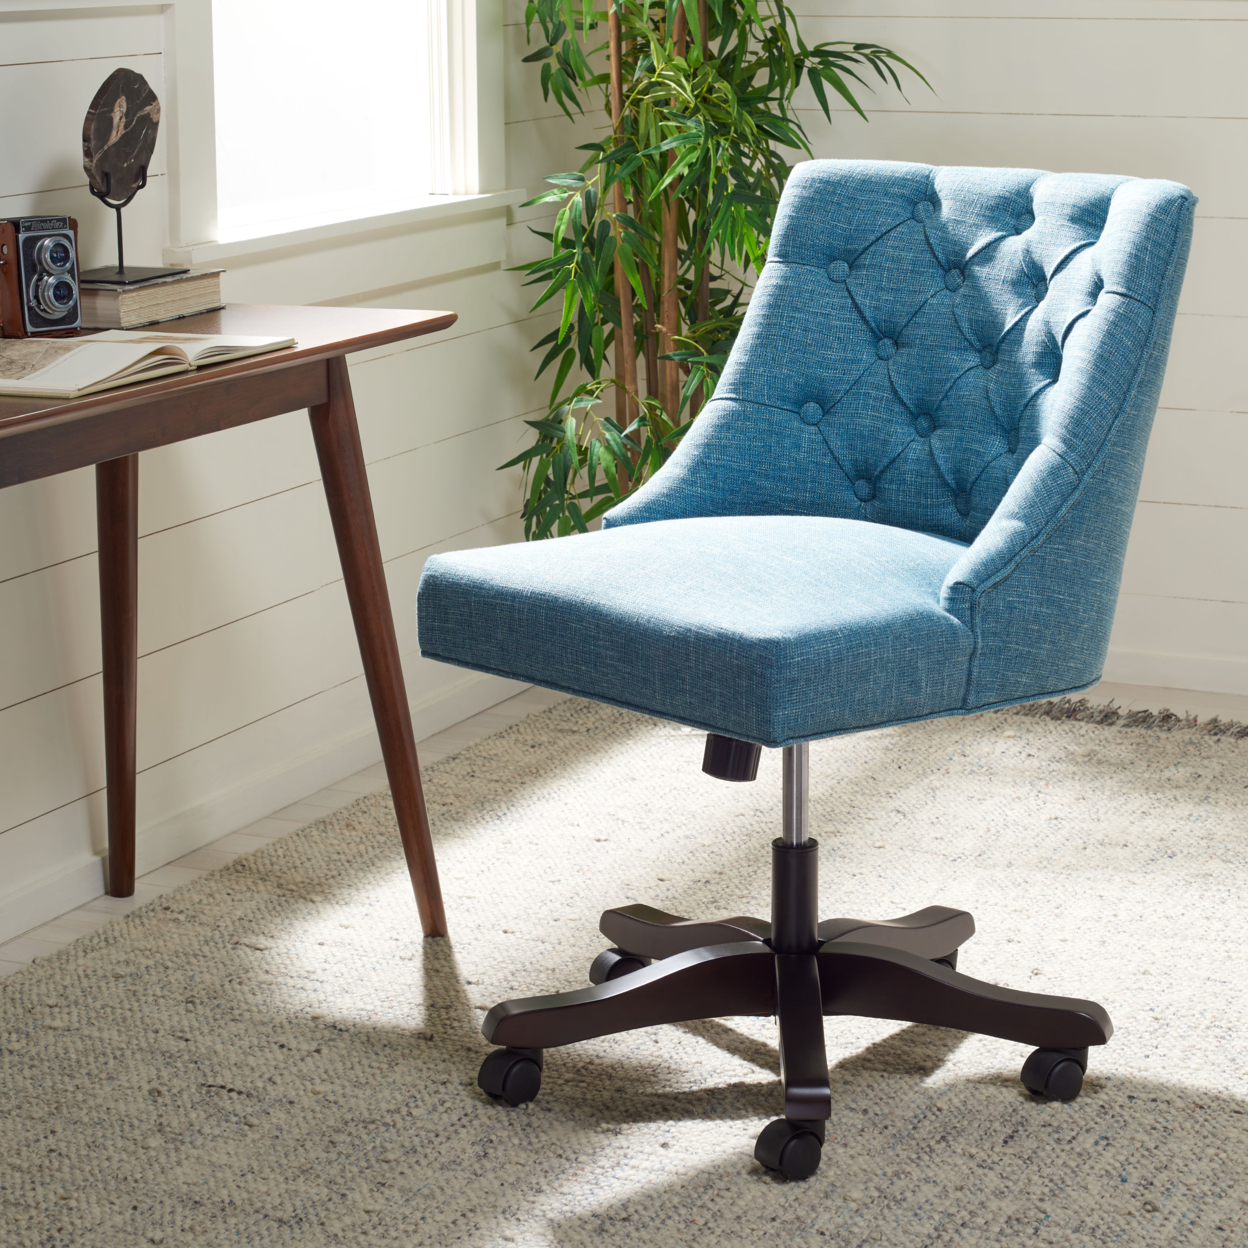 SAFAVIEH Soho Tufted Linen Swivel Desk Chair Light Blue